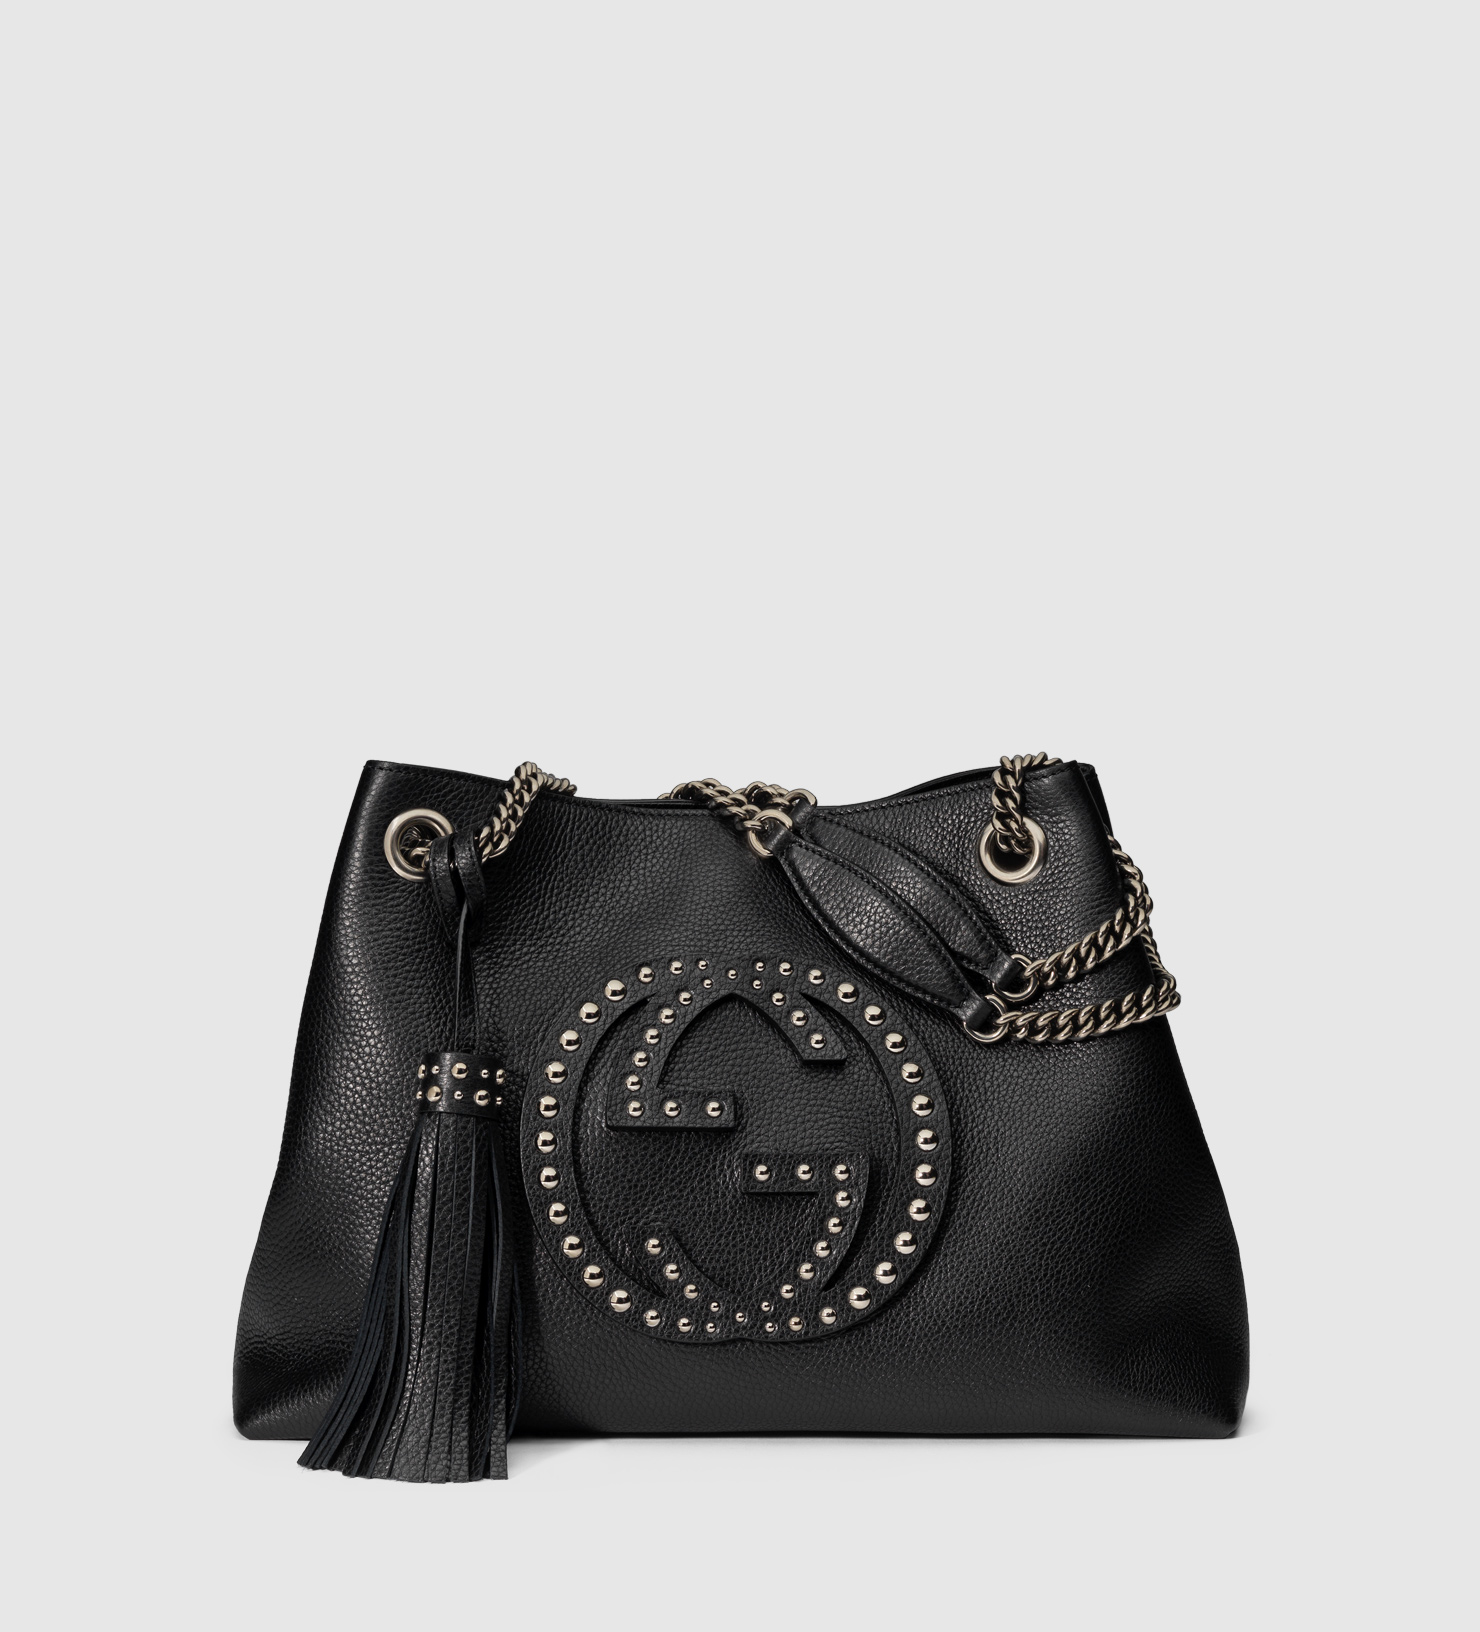 Gucci Soho Studded Leather Shoulder Bag in Black - Lyst